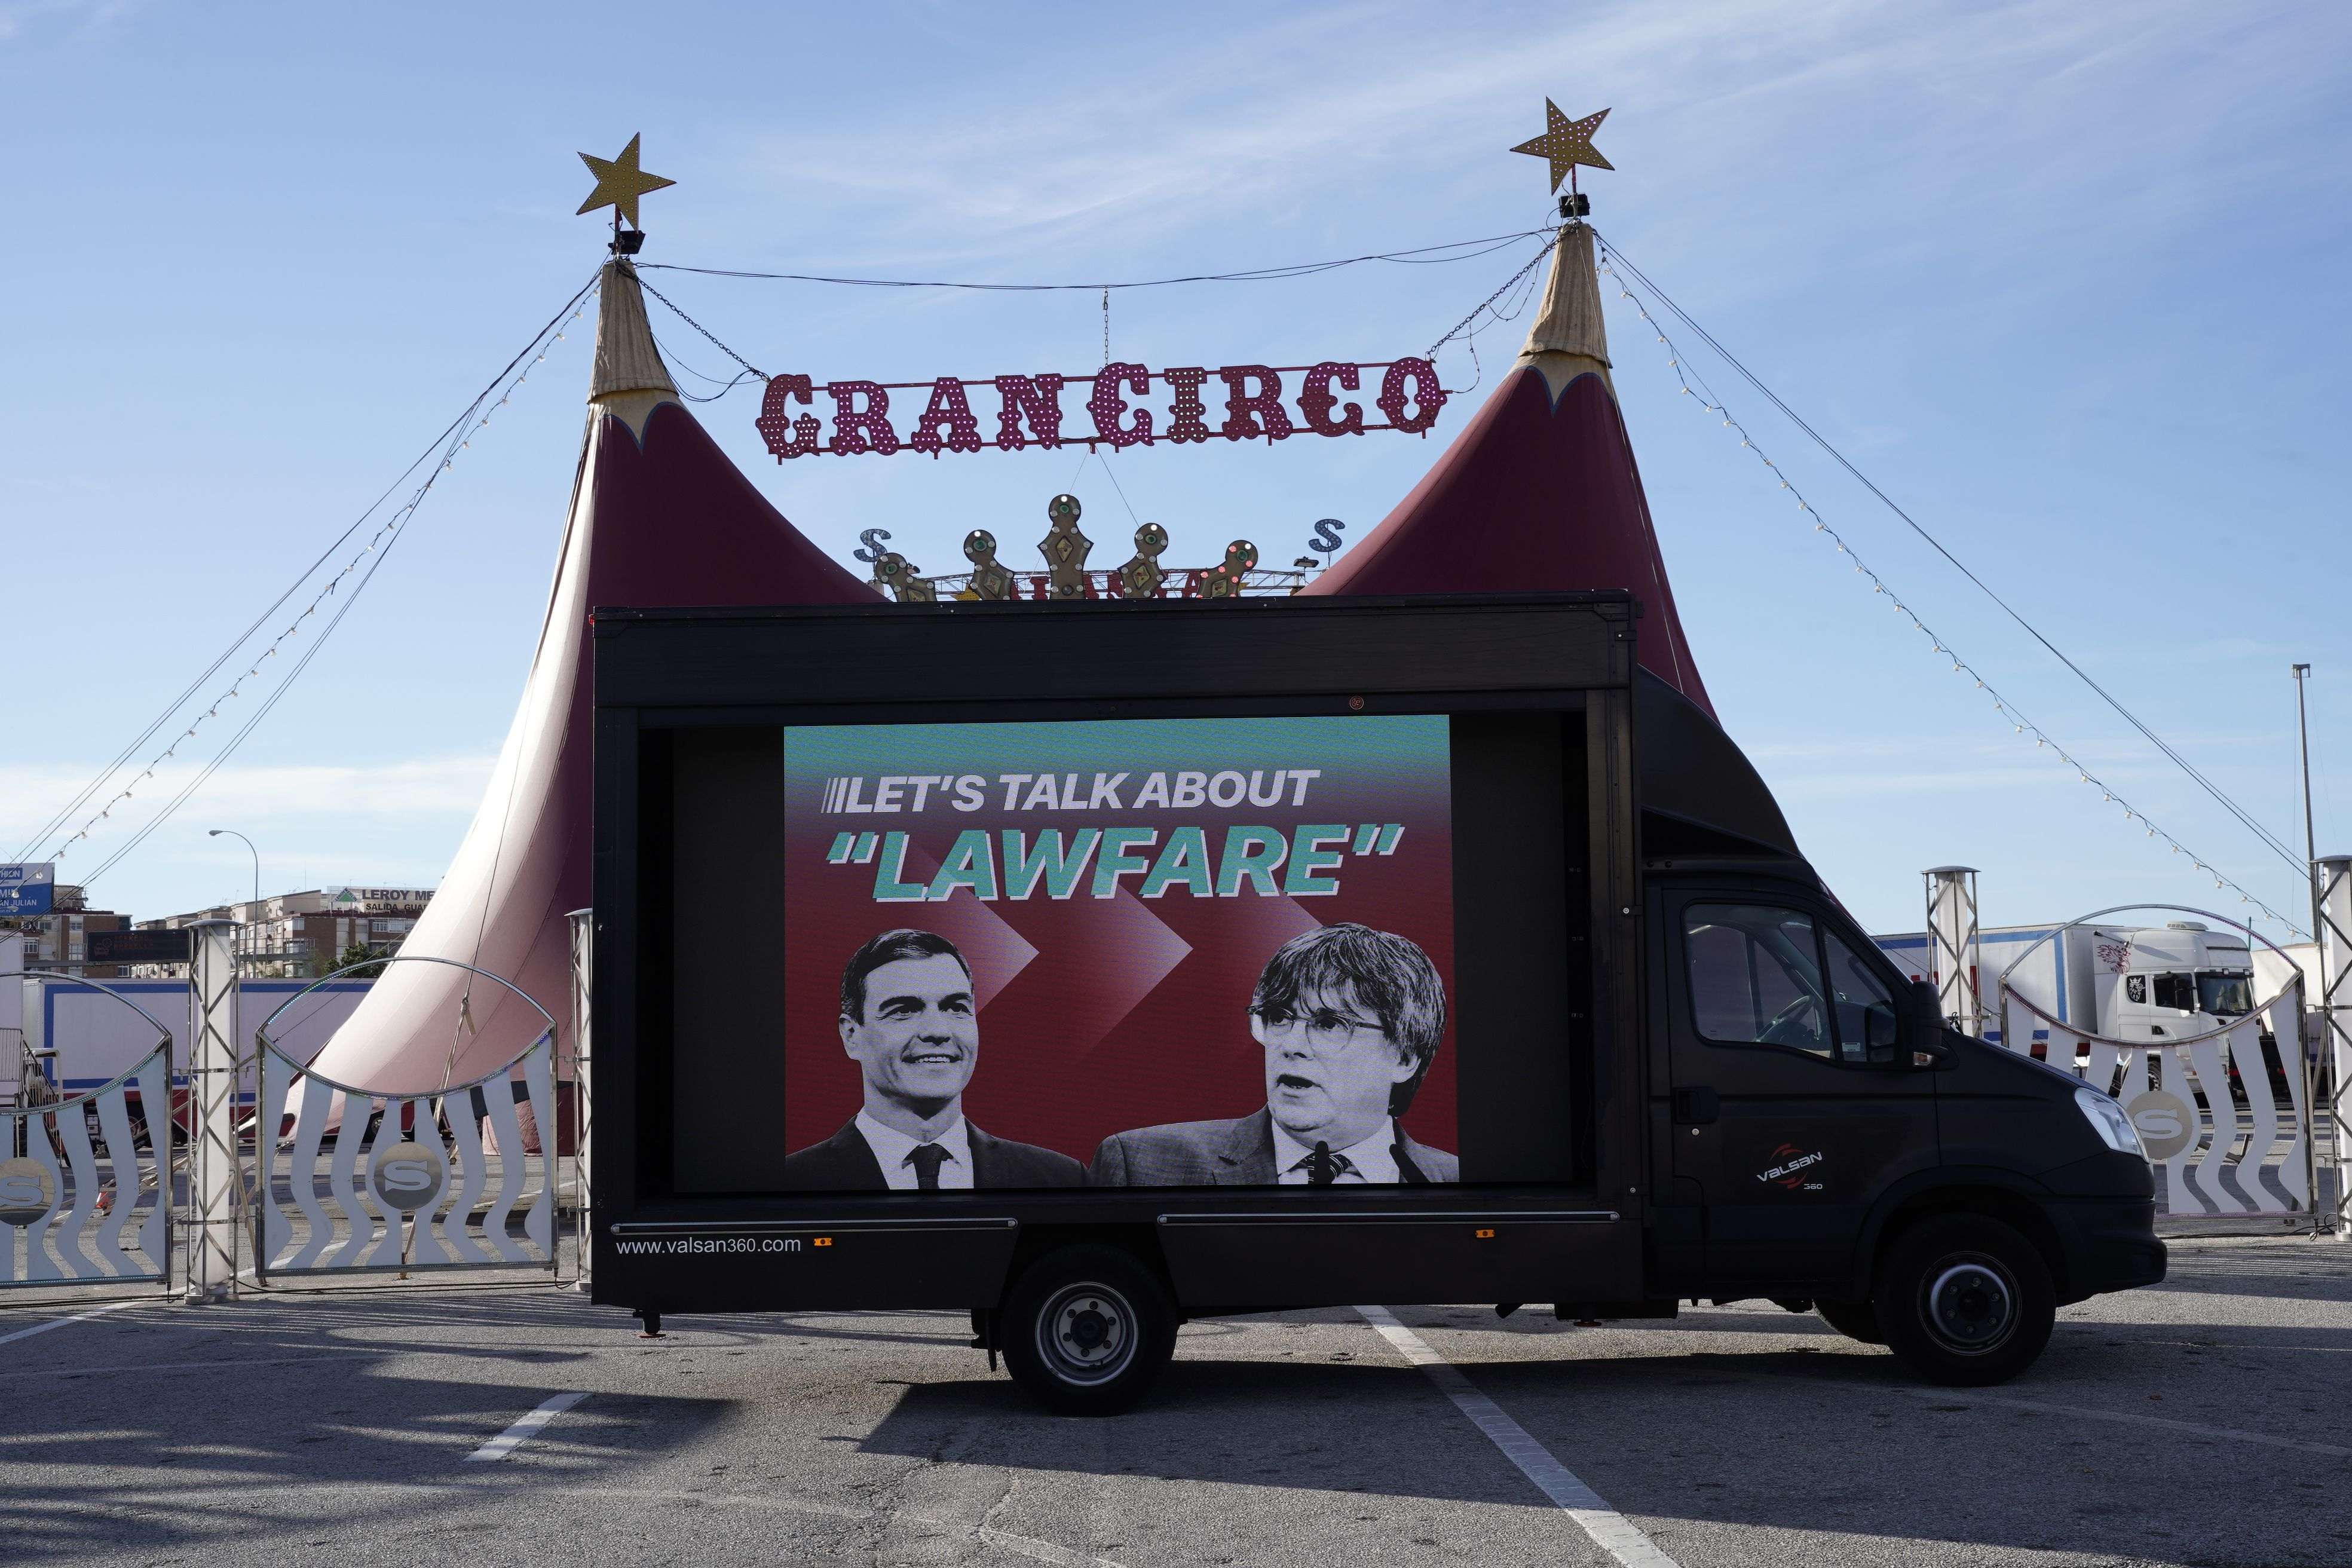 Ciutadans munta un circ a Màlaga aprofitant la cimera socialista: furgoneta contra Puigdemont i l'amnistia